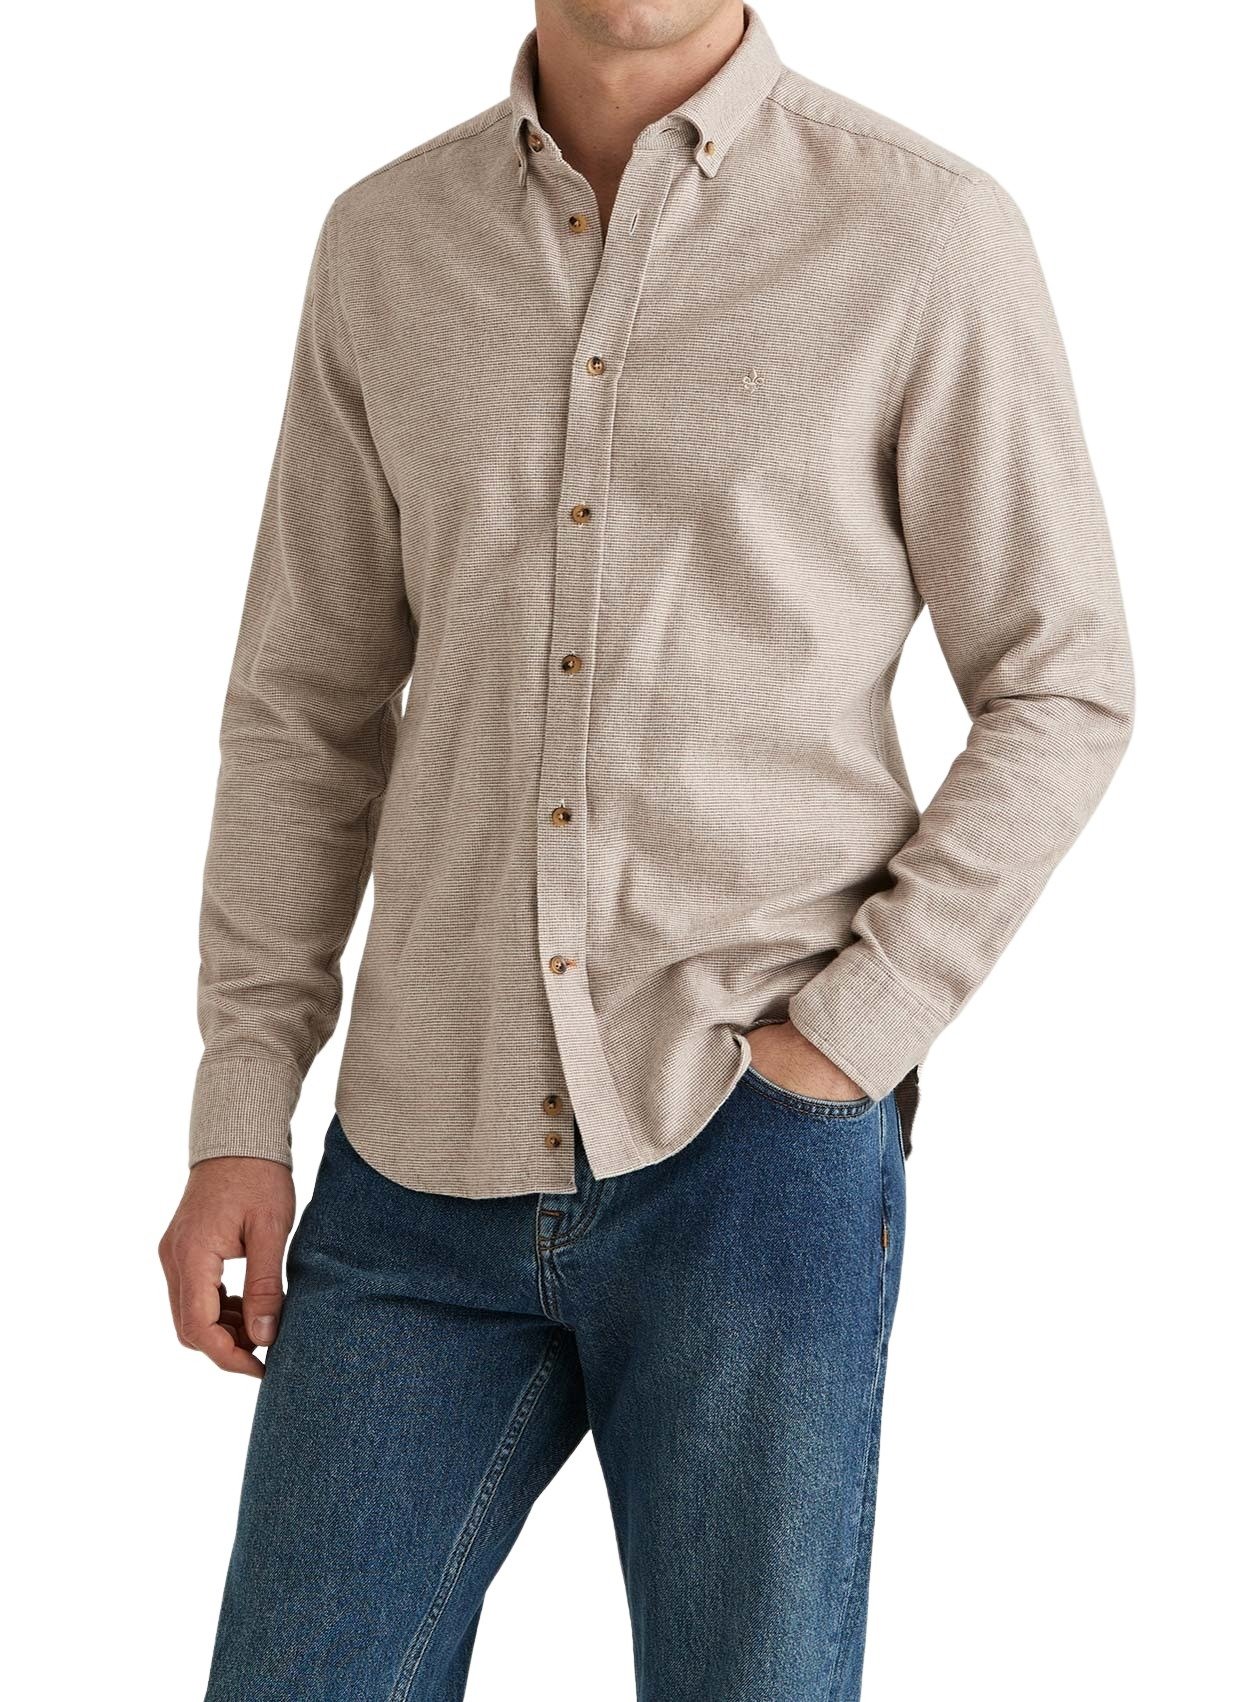 801639-flannel-check-shirt-slim-fit-06-khaki-1